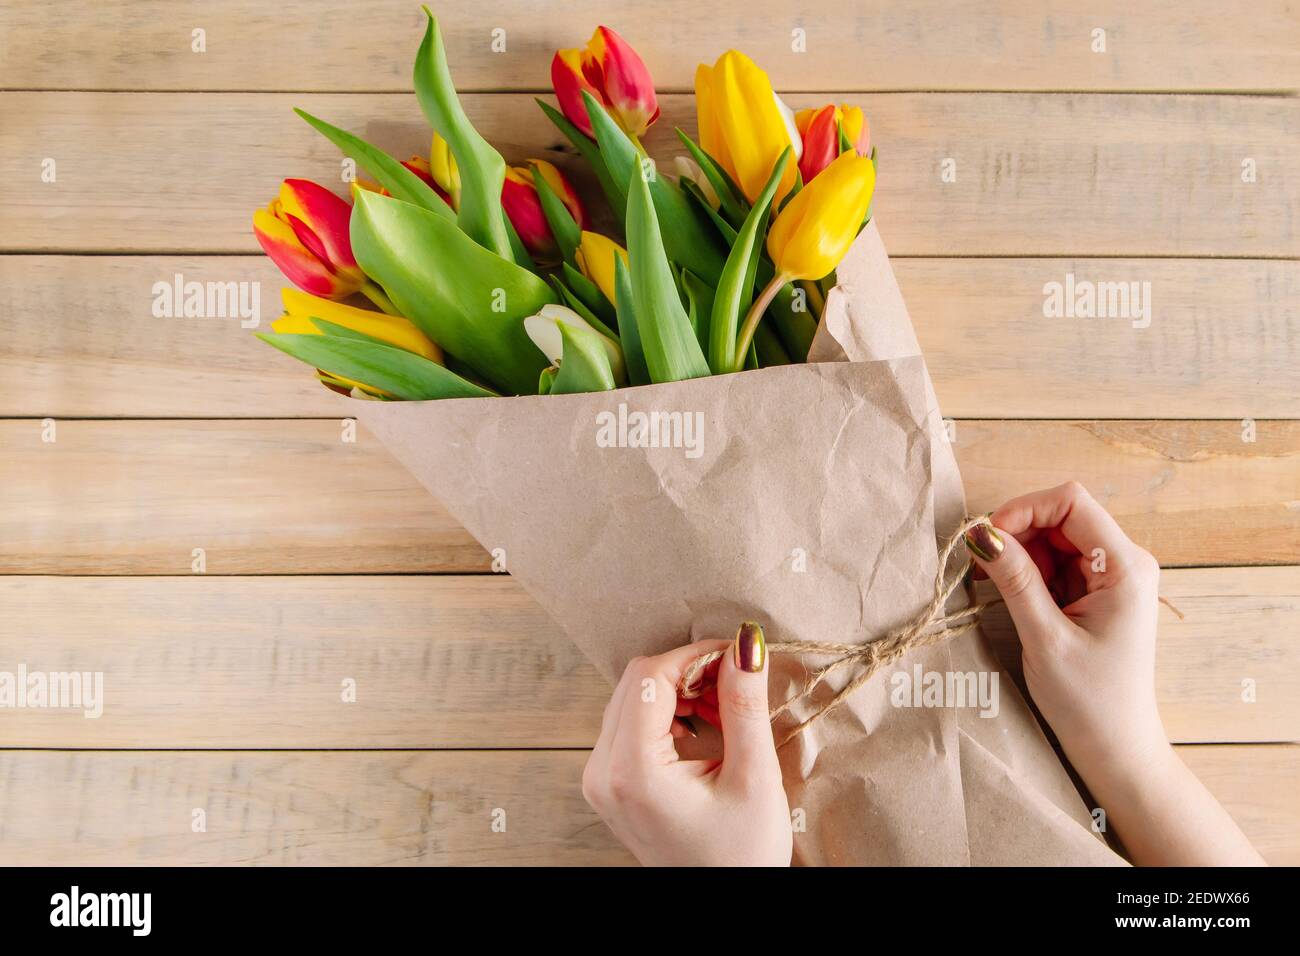 Le processus d'emballage du bouquet de tulipes fraîches dans du papier artisanal respectueux de l'environnement. Étape 3. Cadeau pour les vacances de printemps. Fleurs. Banque D'Images